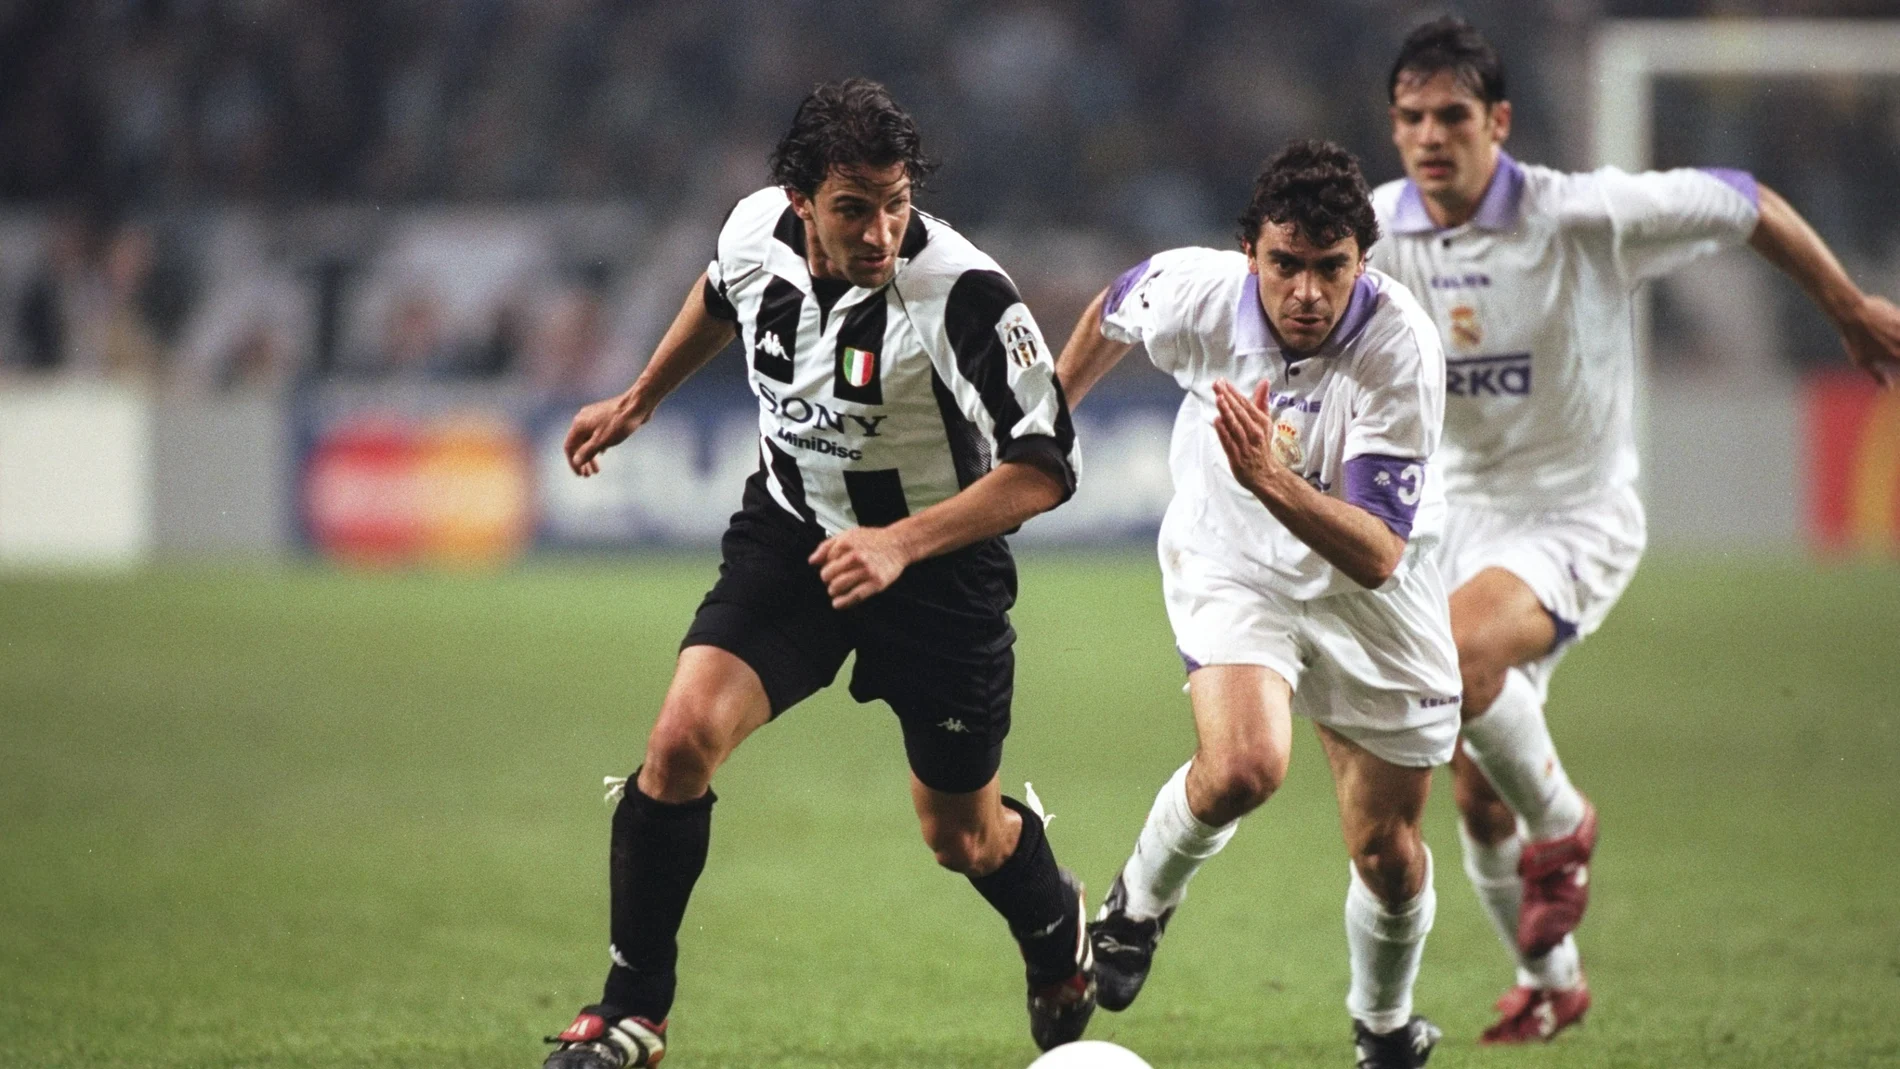 Del Piero avanza con el balón ante la defensa de Sanchís